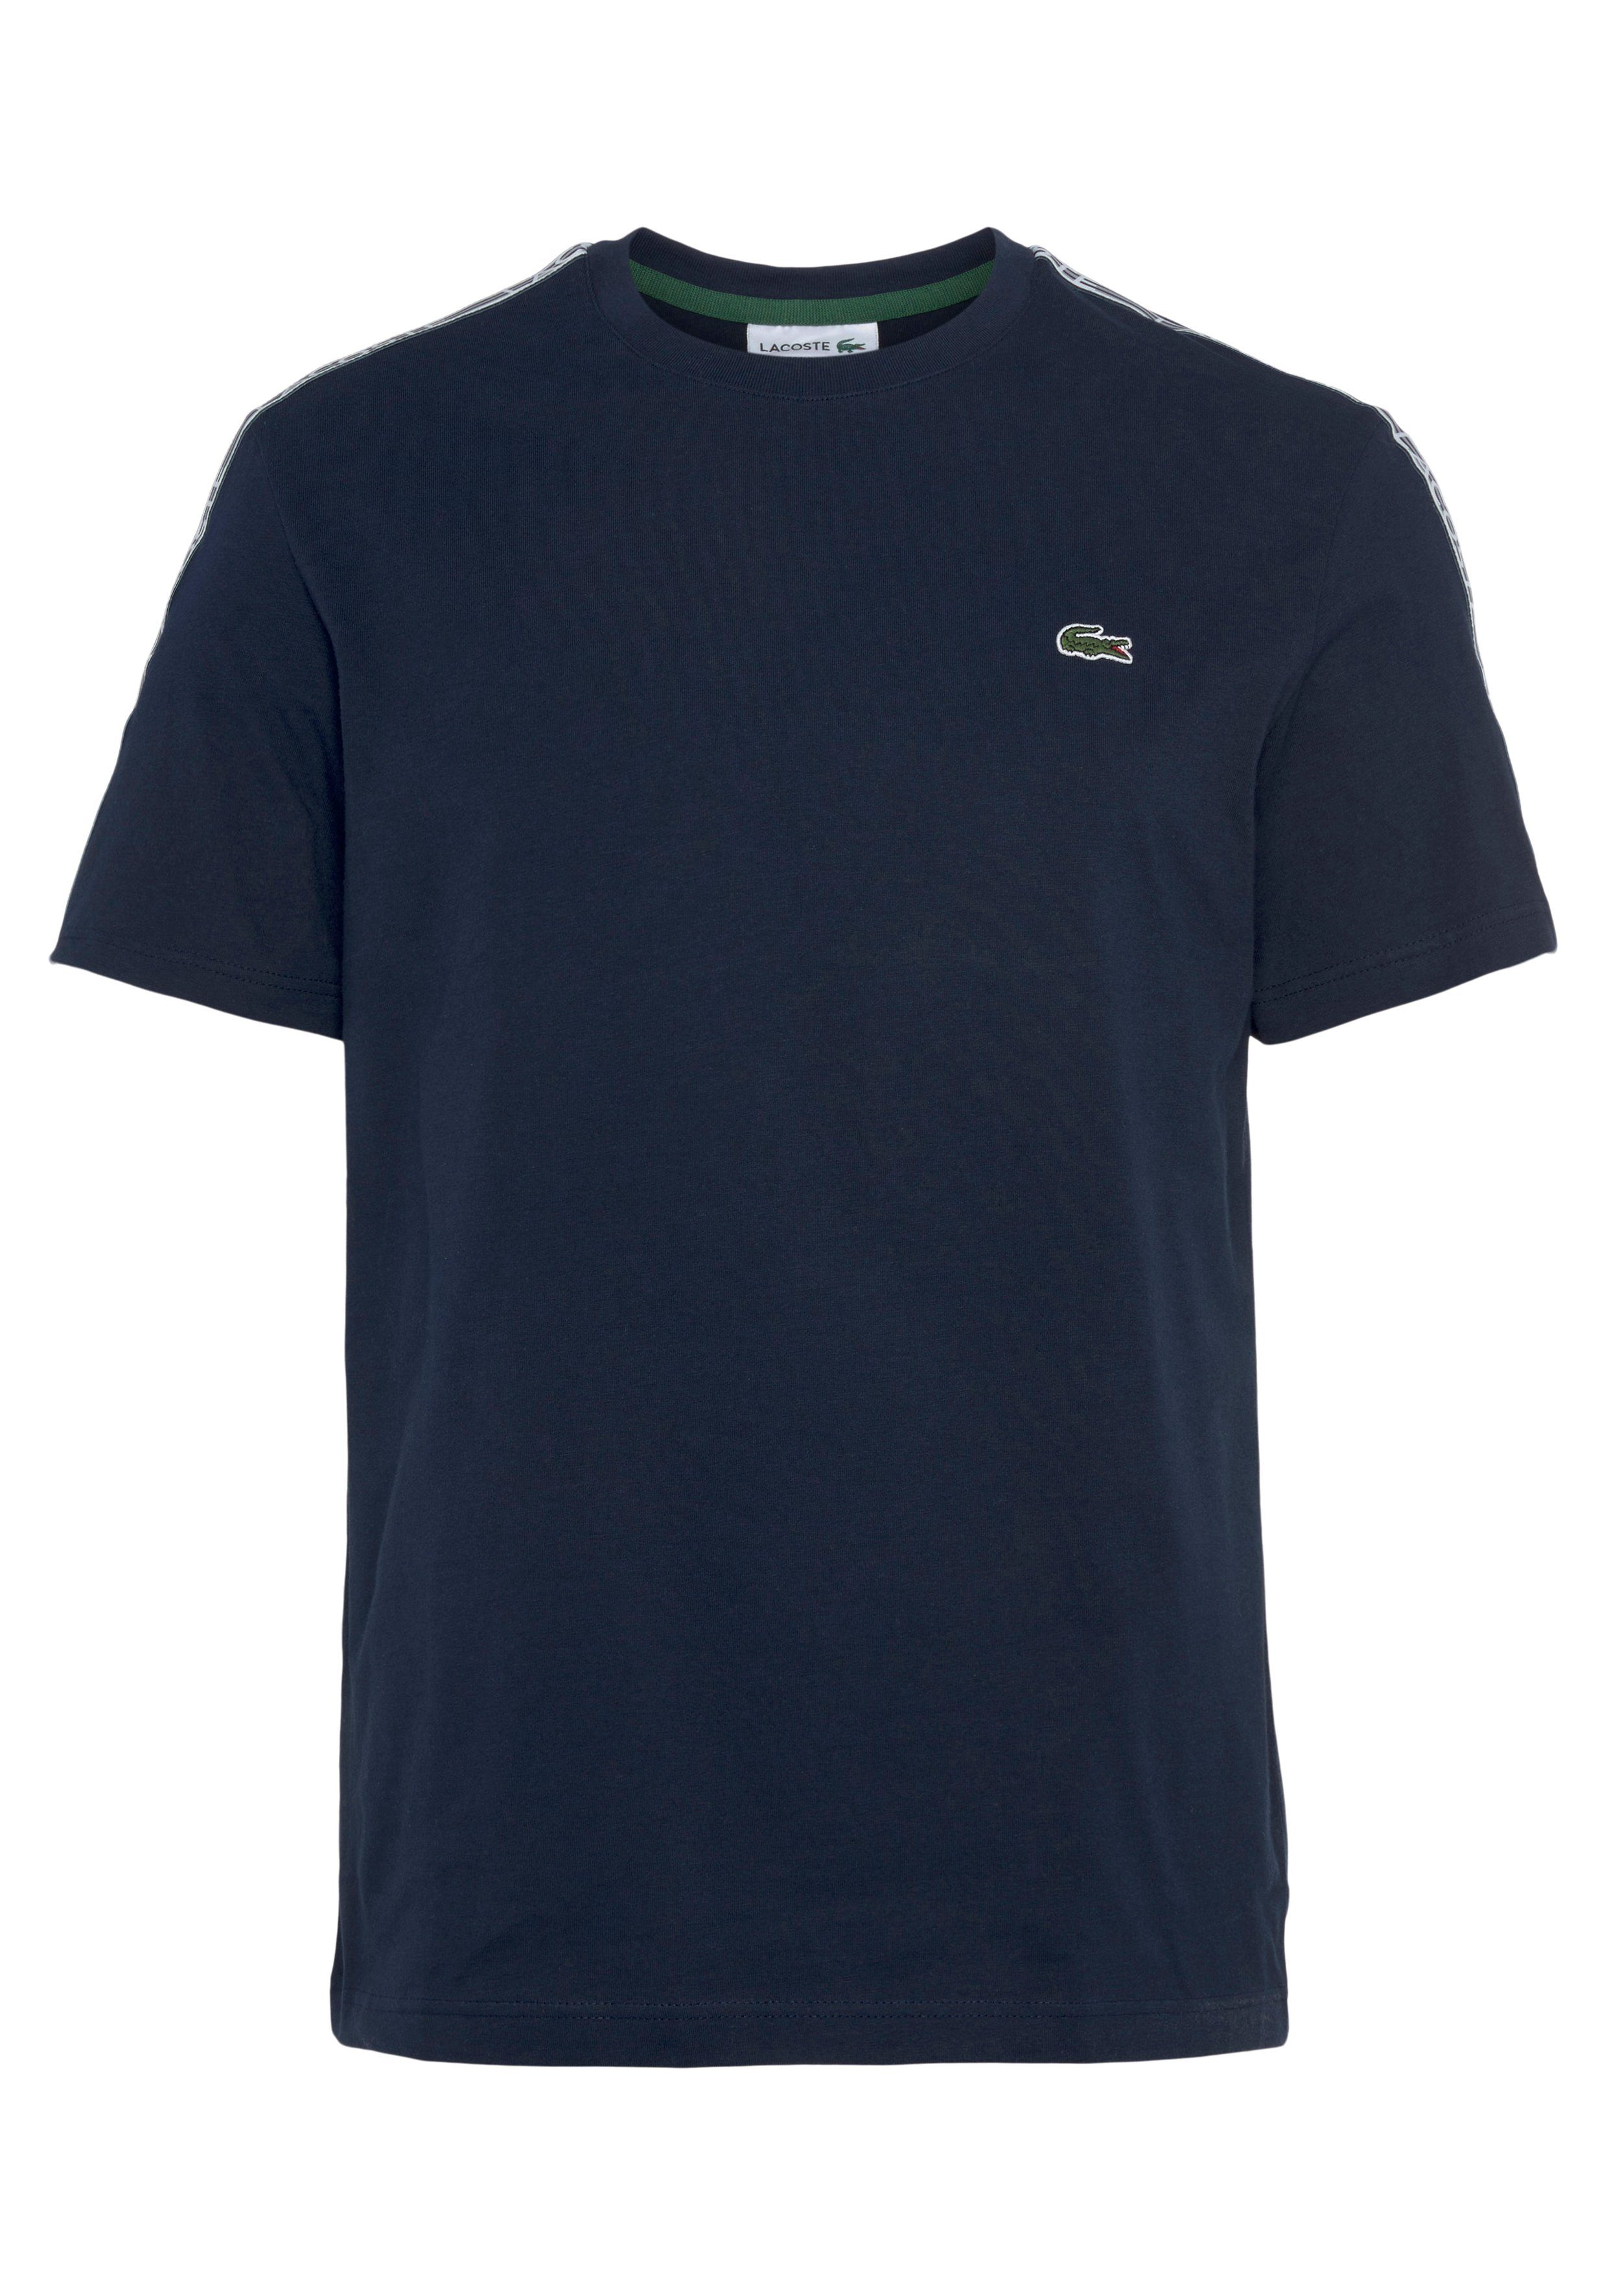 Schultern Lacoste beschriftetem navy an den mit T-Shirt blue Kontrastband